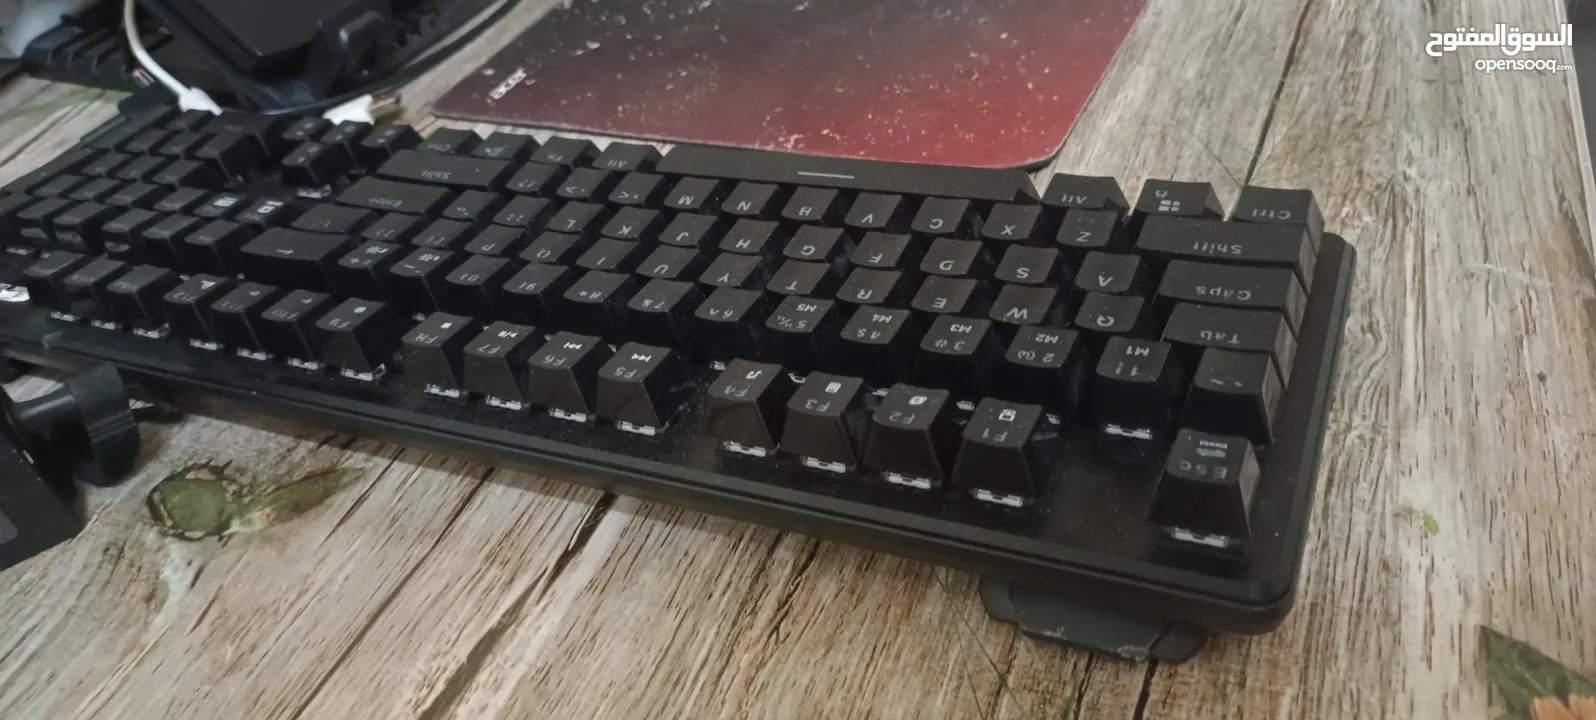 keyboardميكانيكي للبيع